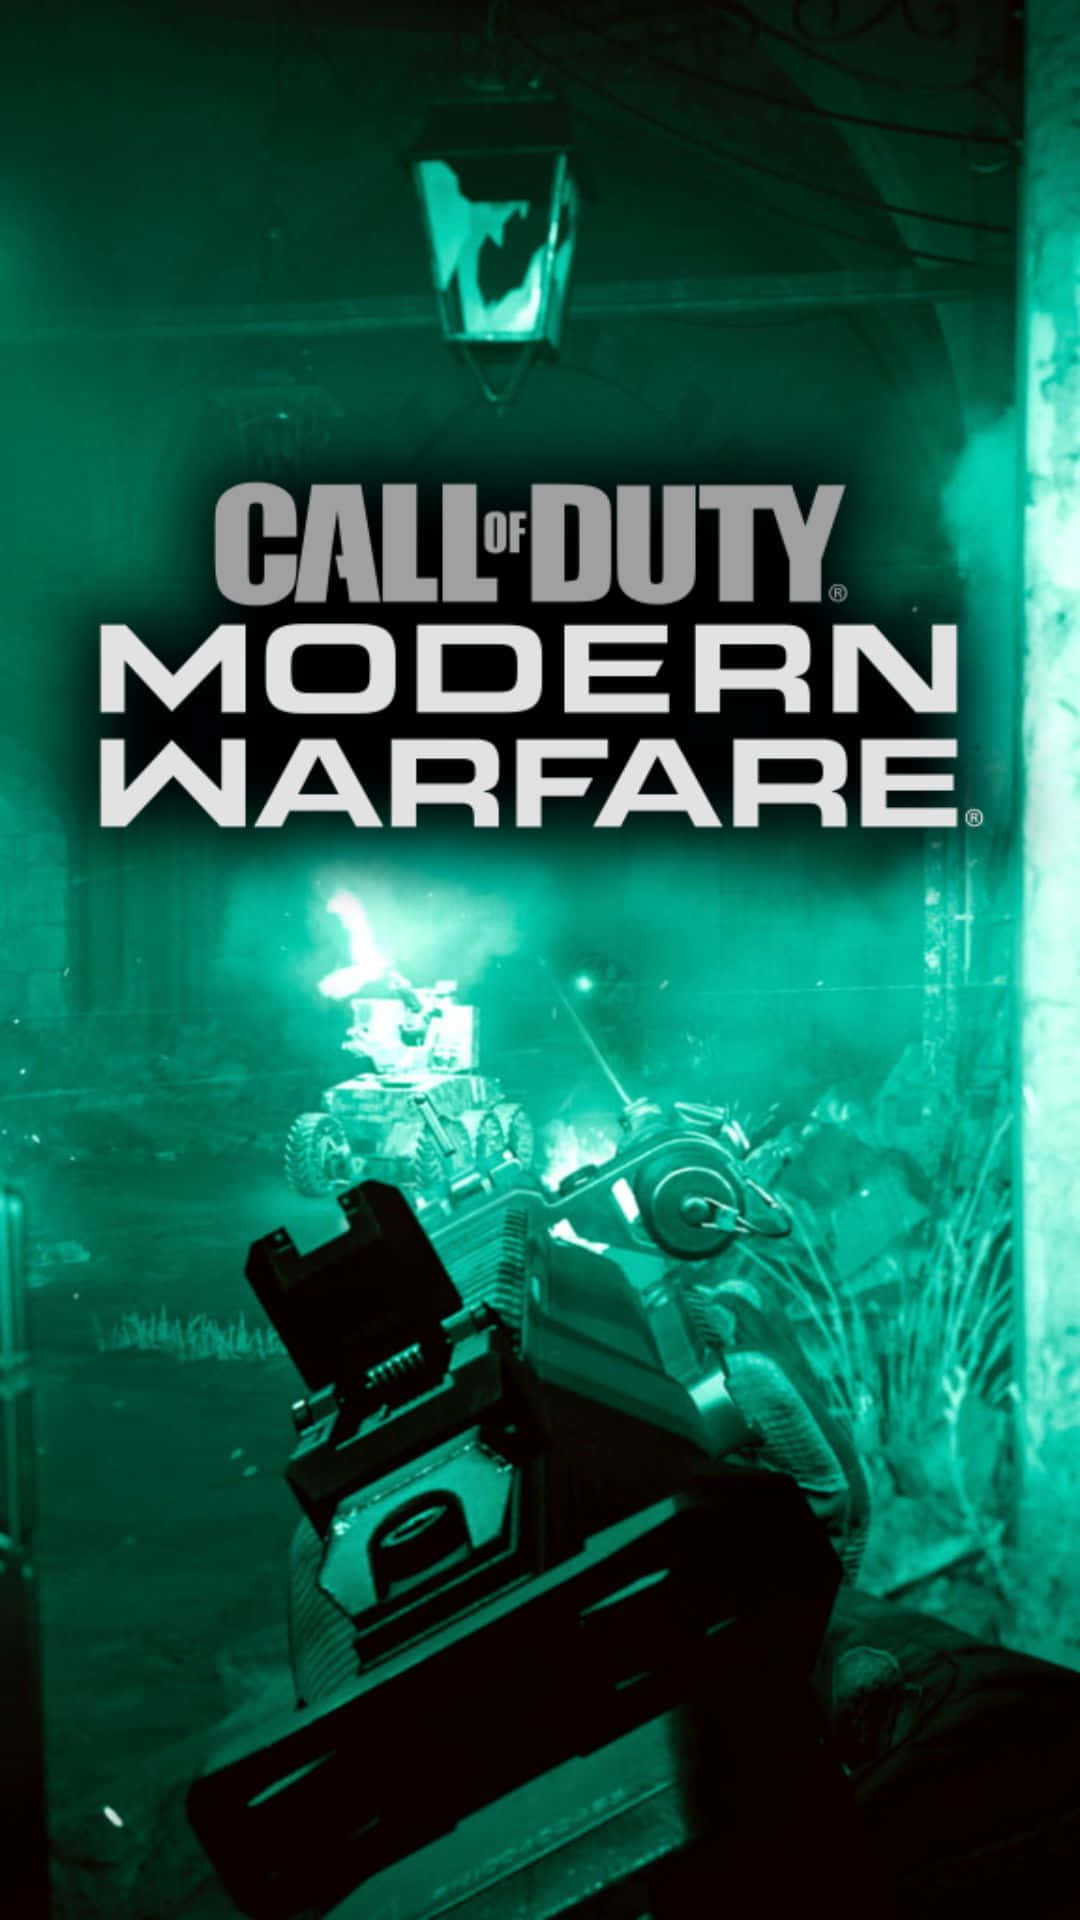 Prontoper La Battaglia: Android Call Of Duty Modern Warfare